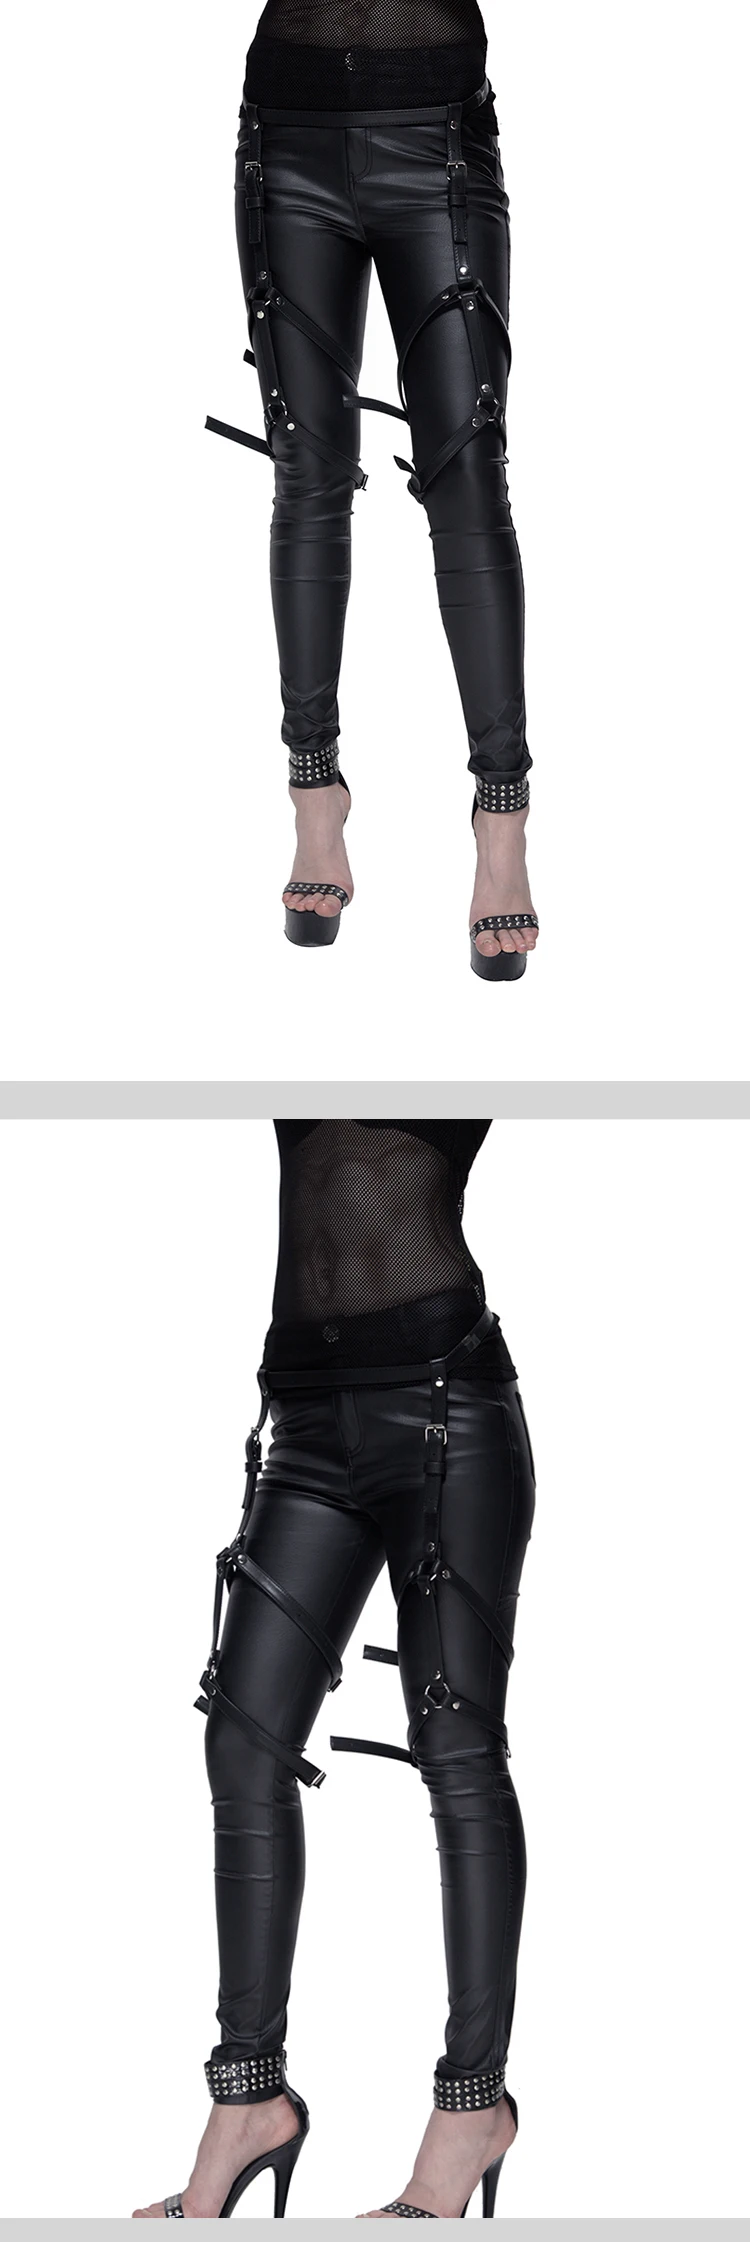 2019 Панк Мода Дизайн ремень хип-хоп модные женские ремни леди кожаный пояс джинсы брюки ремни